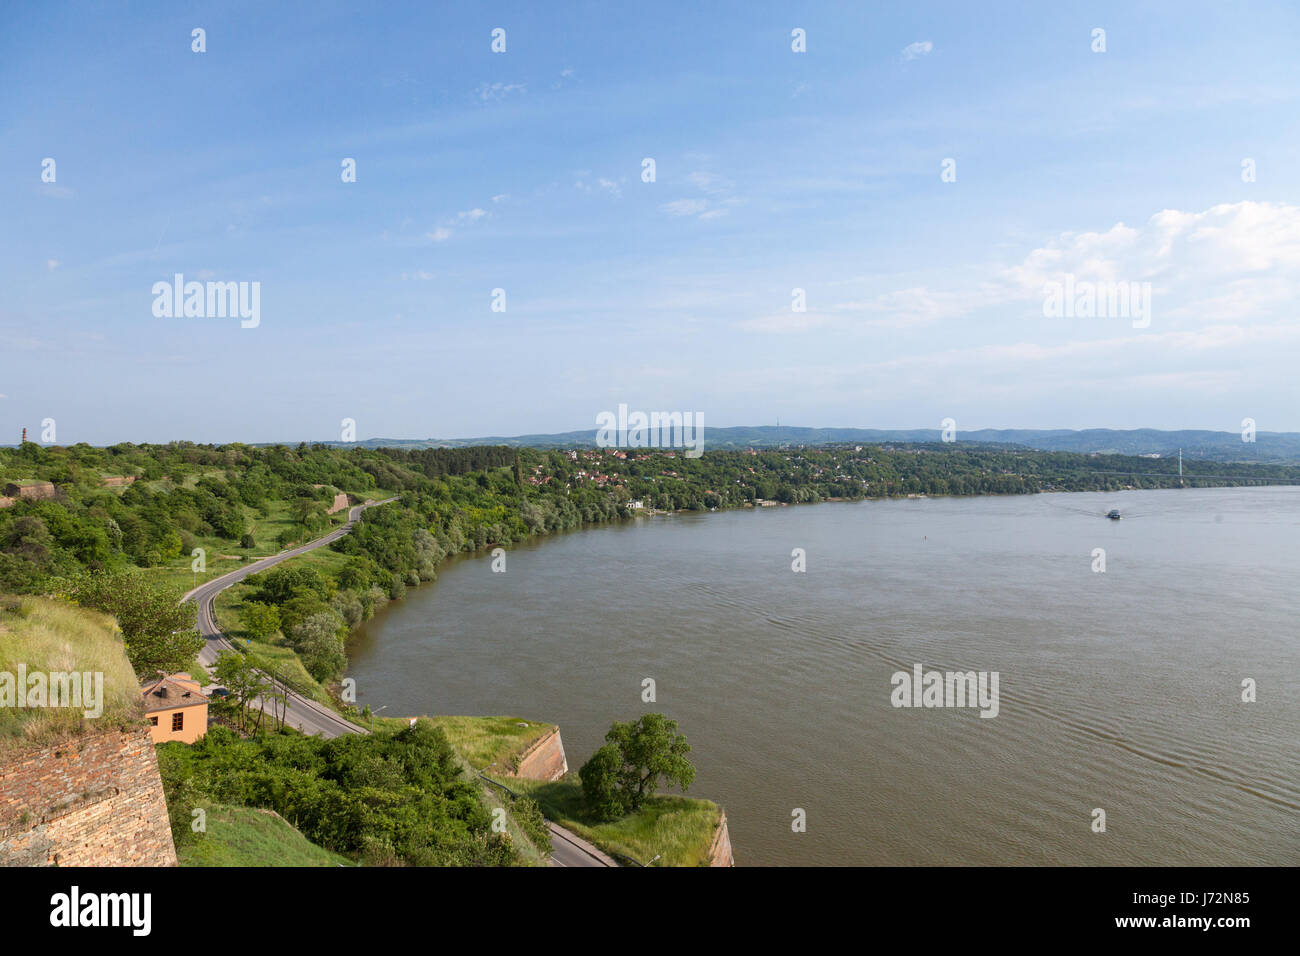 Donauufer von Petrovaradin Festung in Novi Sad, Serbien. Donau ist einer der größten Flüsse des zentralen und östlichen Europa Bild des D Stockfoto